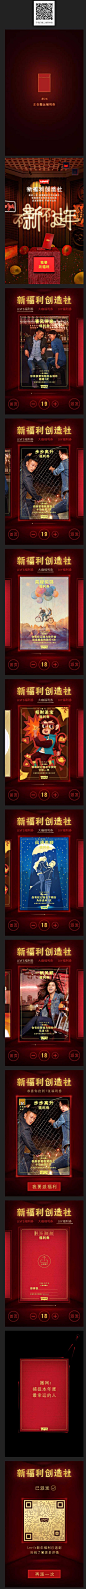 李维斯：新福利创造社 H5网站 - - 黄蜂网woofeng.cn